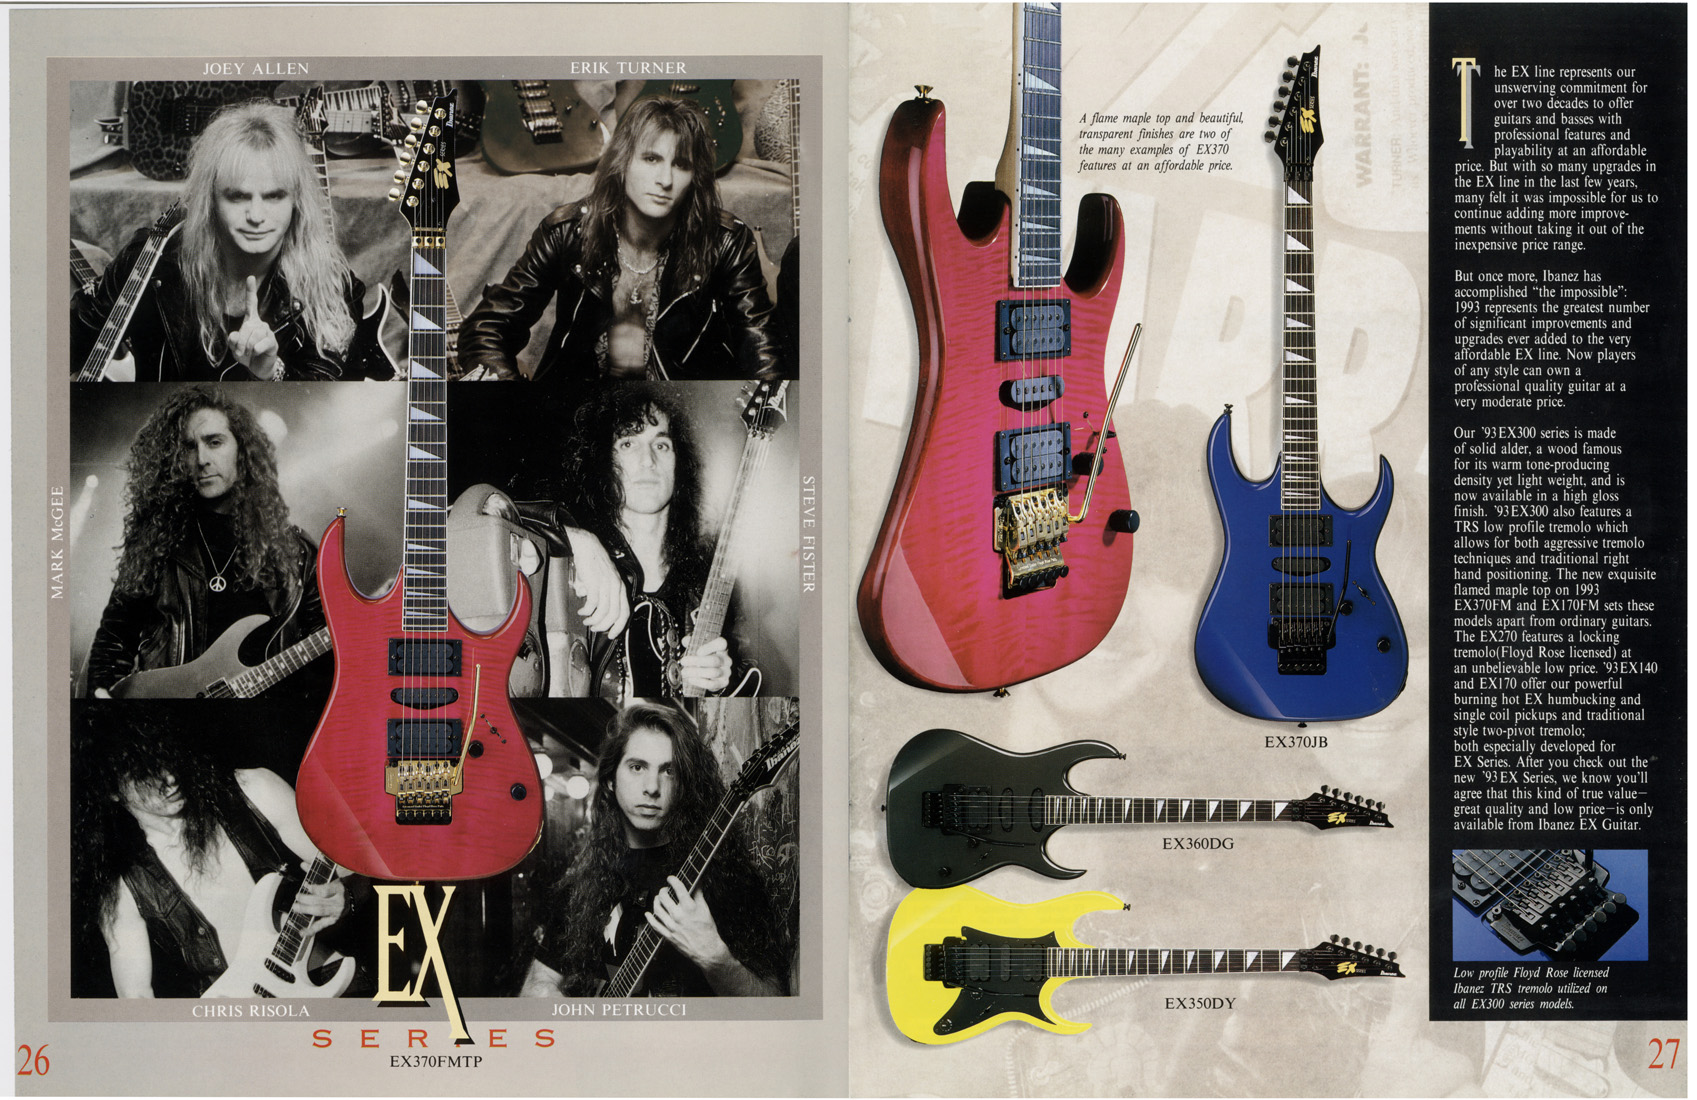 Article Of Ibanez Guitar - Bass Guitar - HD Wallpaper 